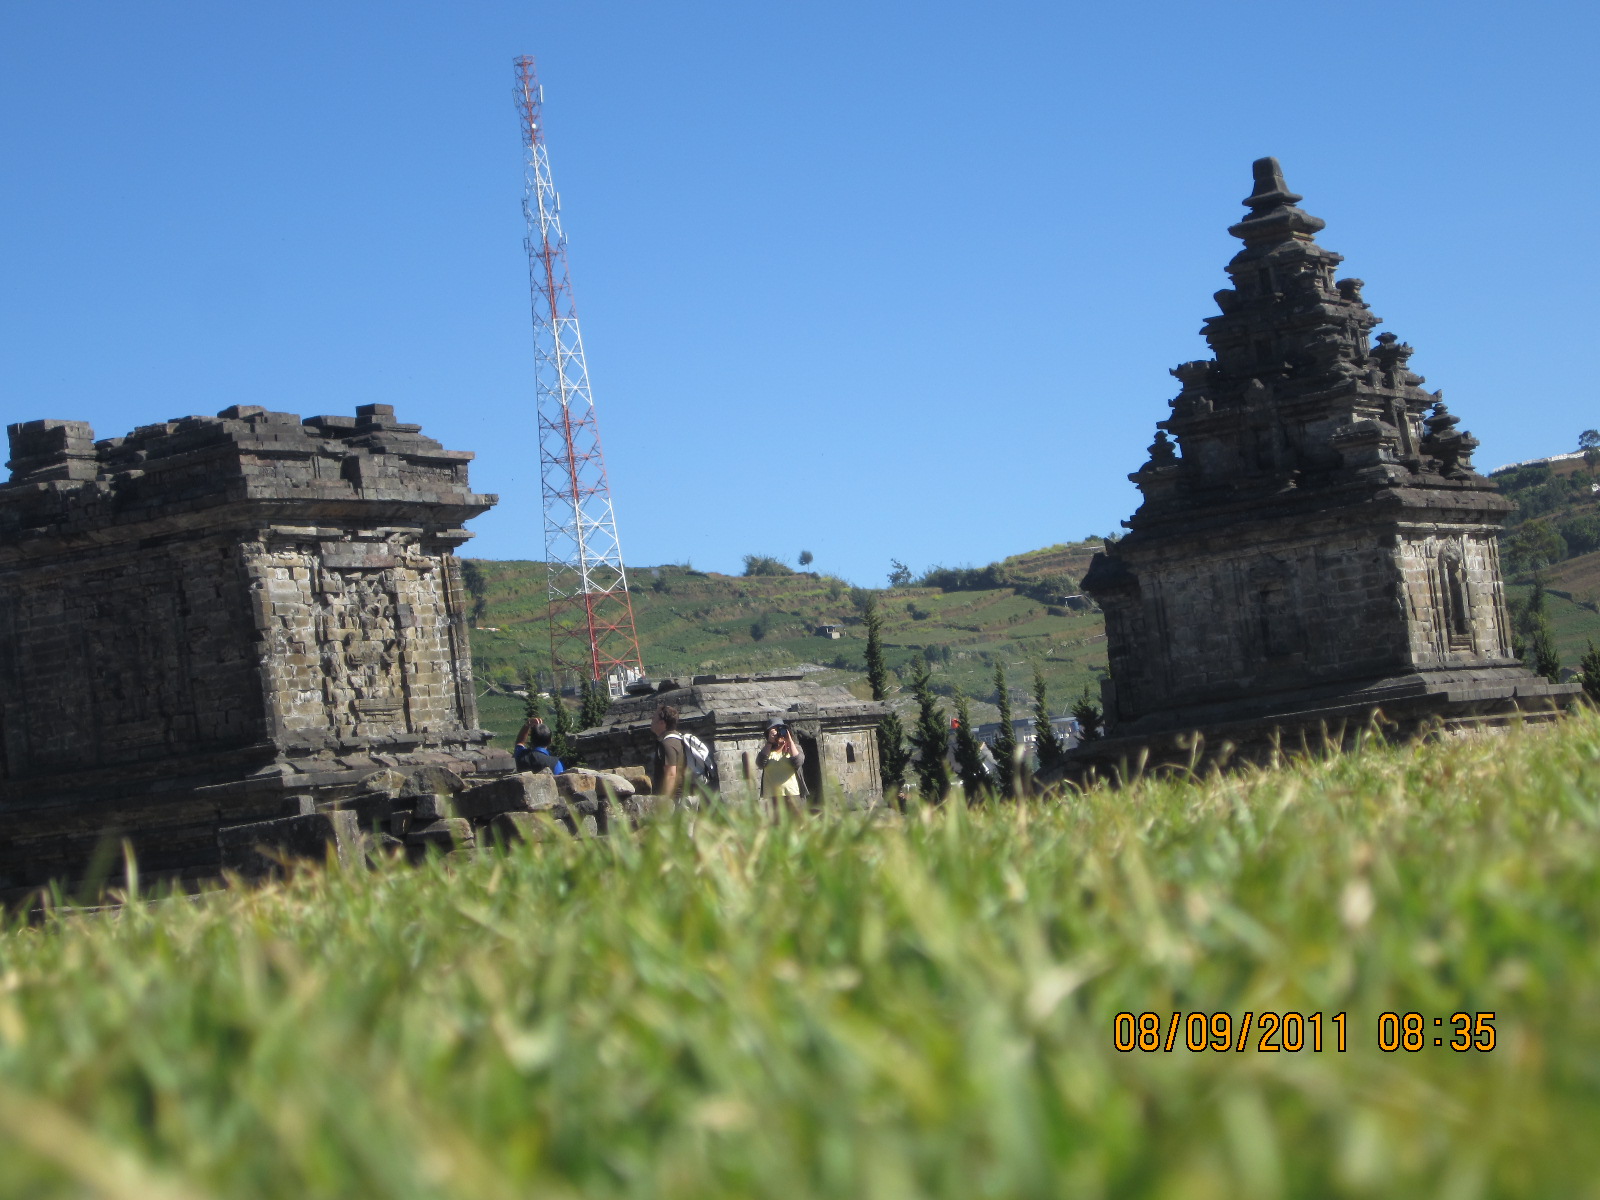 petaniikan: Kawasan Wisata Klaten Jawa Tengah - Candi Prambanan